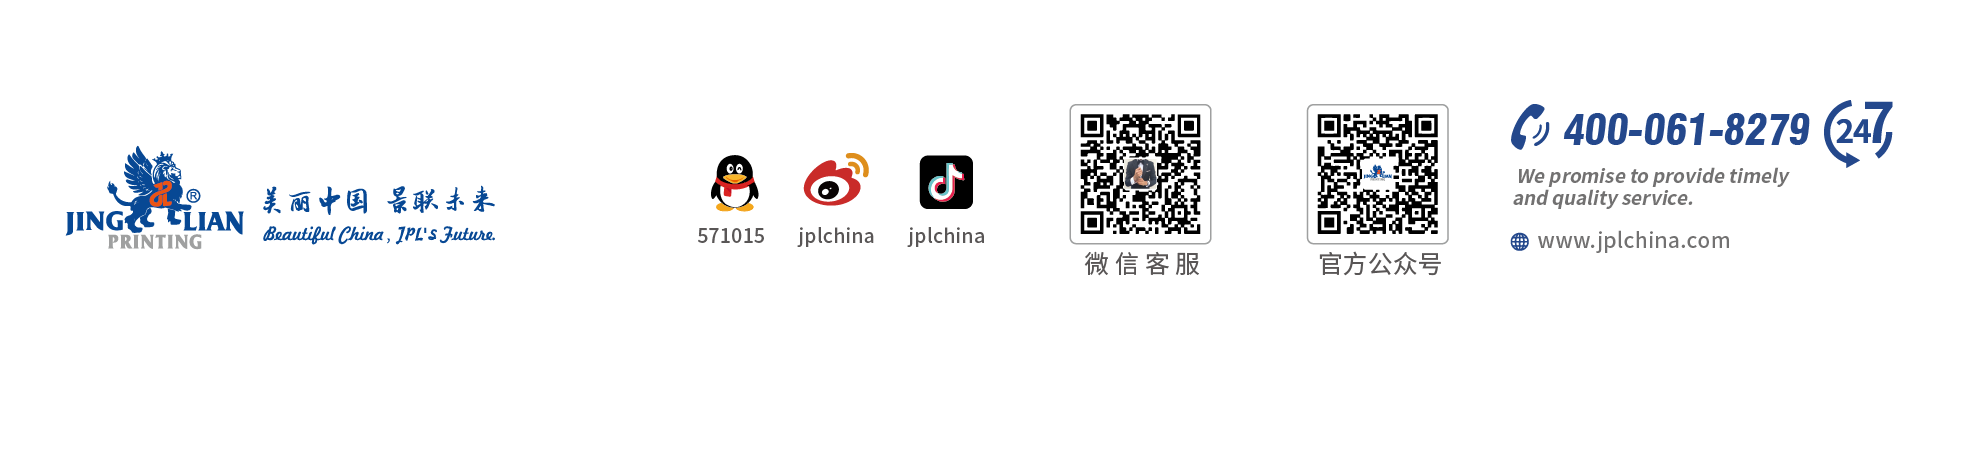 亚搏电子娱乐·中国有限责任公司(图2)